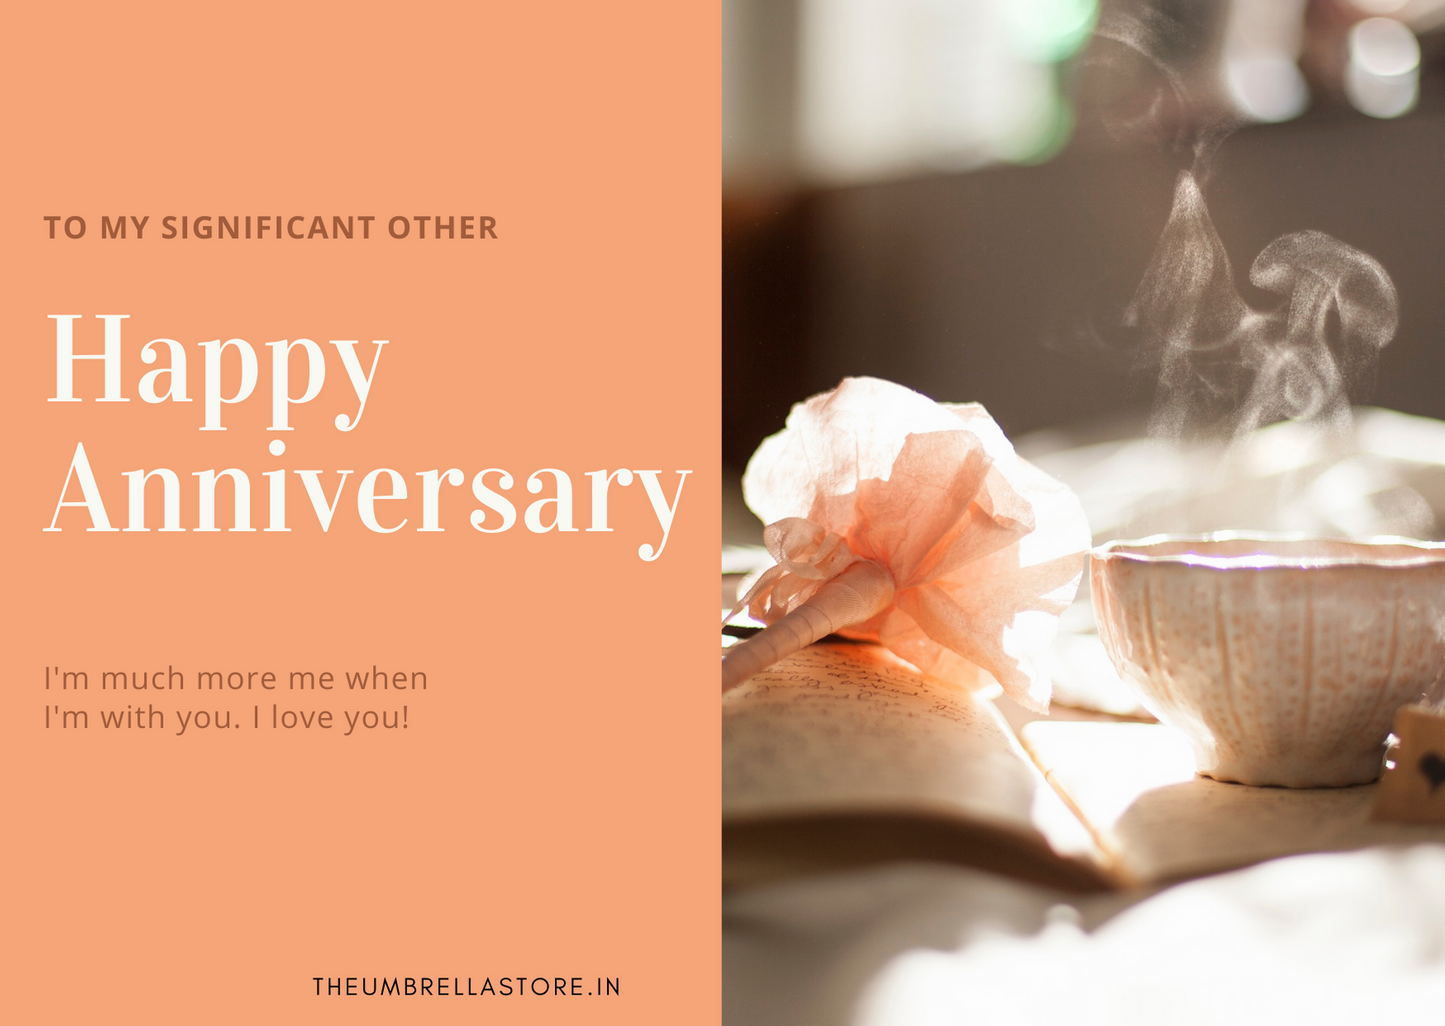 Happy Anniversary - The Umbrella store